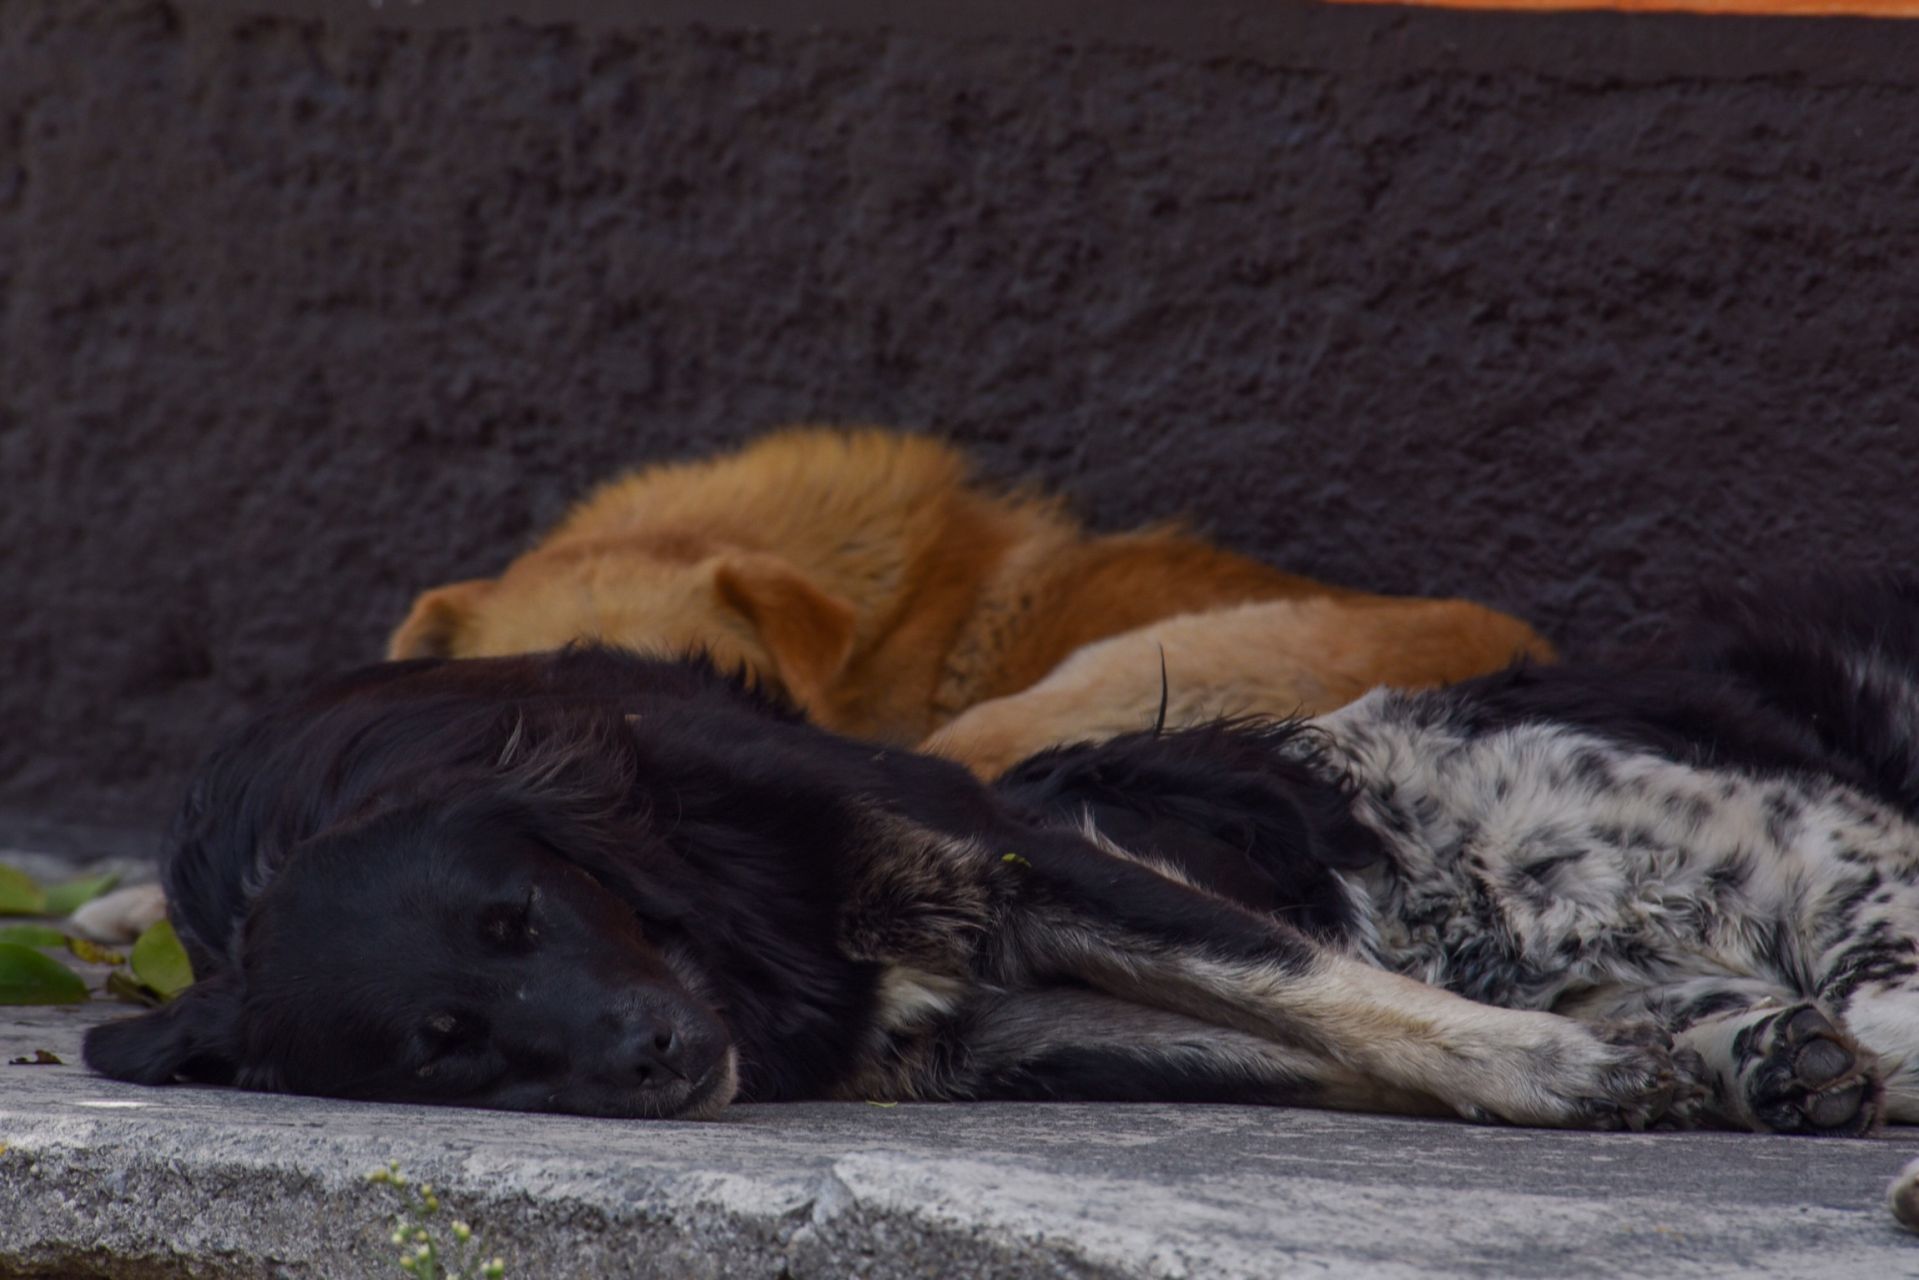 Mundo enfermo y triste: Reportan envenenamiento masivo de perritos en Veracruz